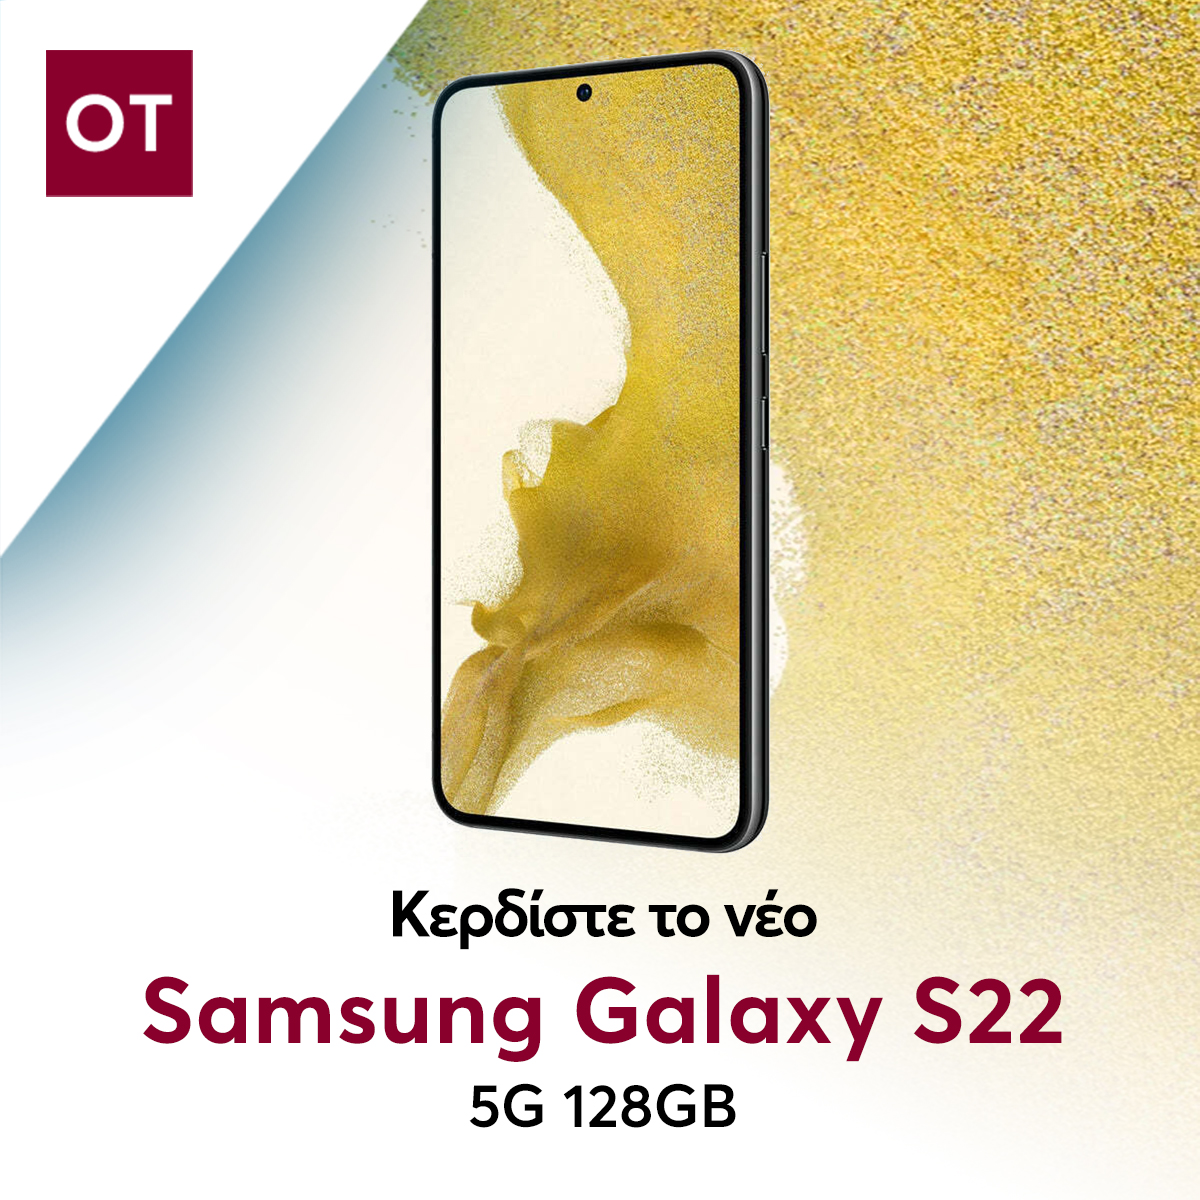 Διαγωνισμός ot.gr: Κερδίστε το νέο Samsung Galaxy S22 5G 128GB